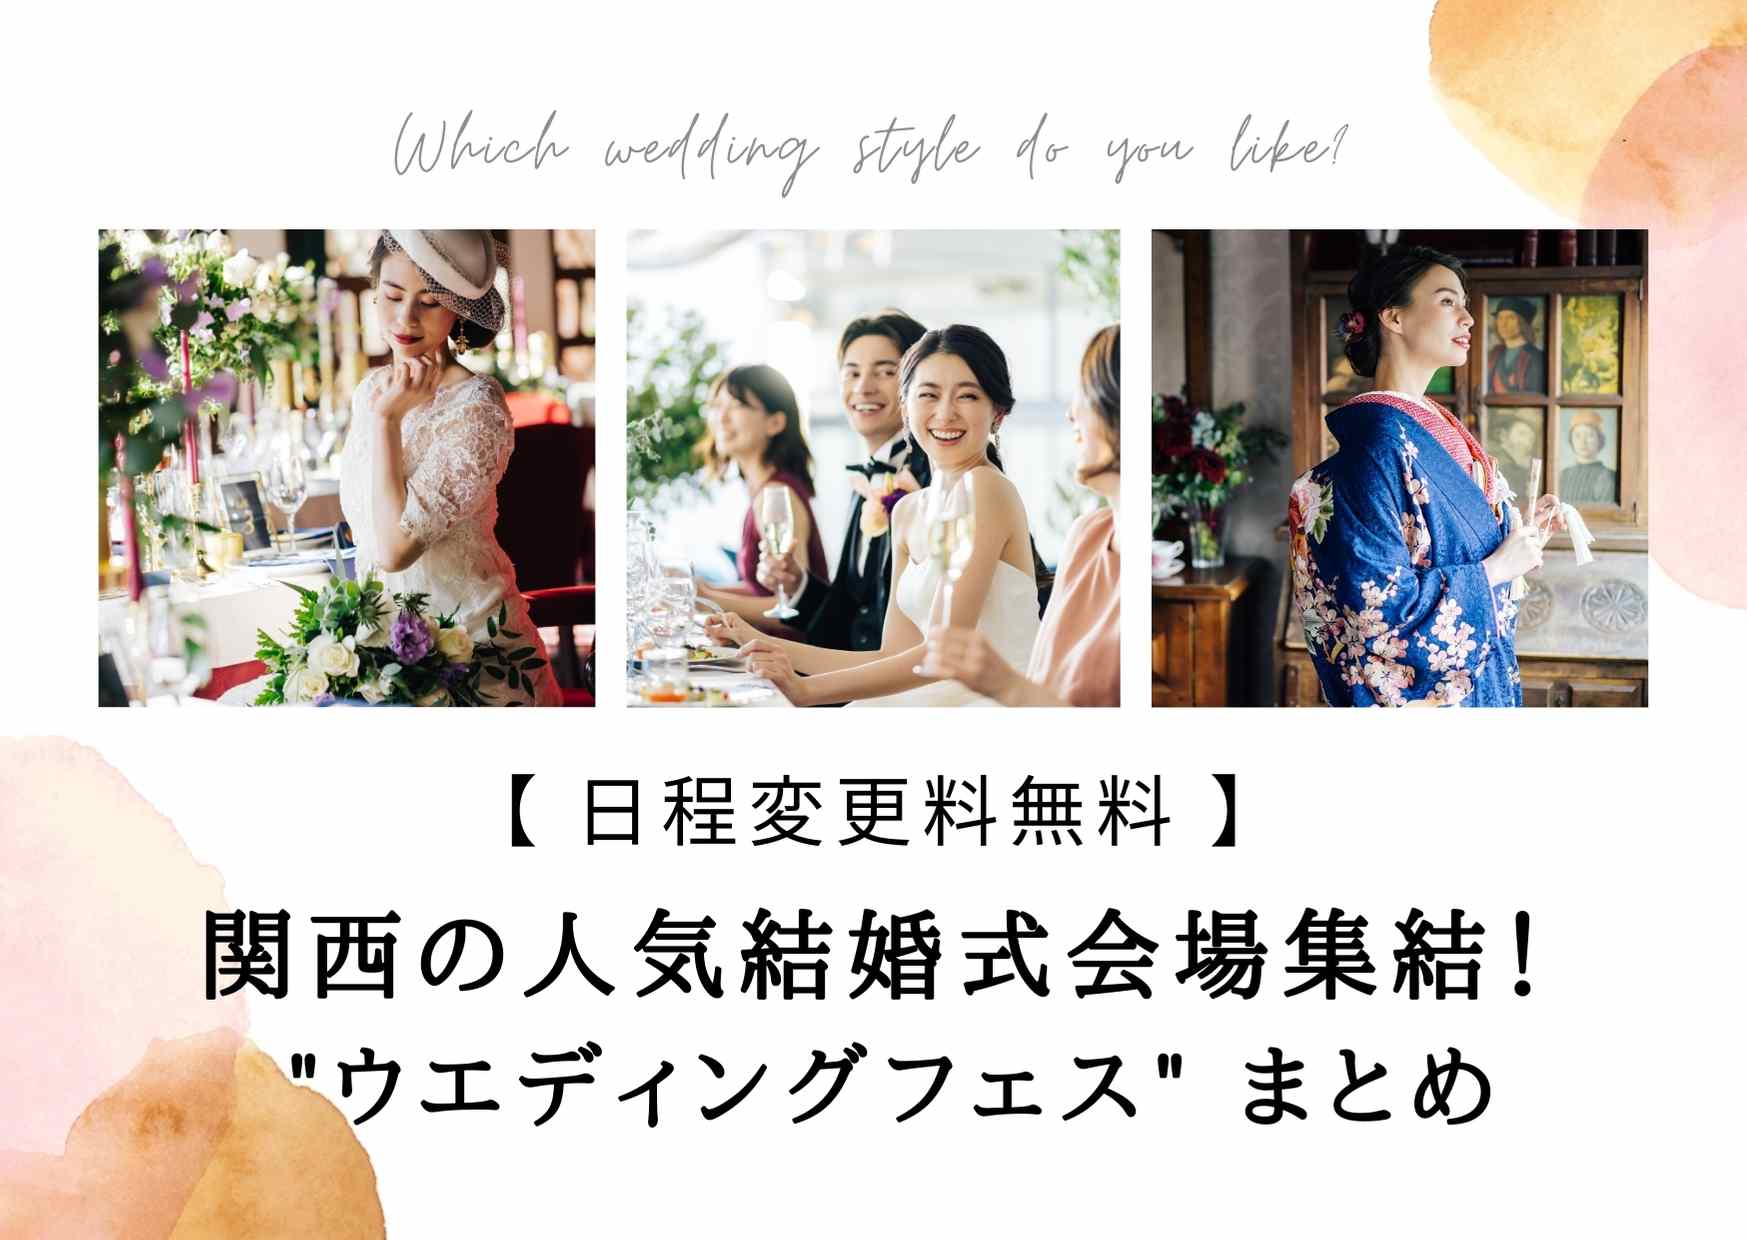 注目 関西 京都大阪神戸 で日程変更料が無料の結婚式場が大集合